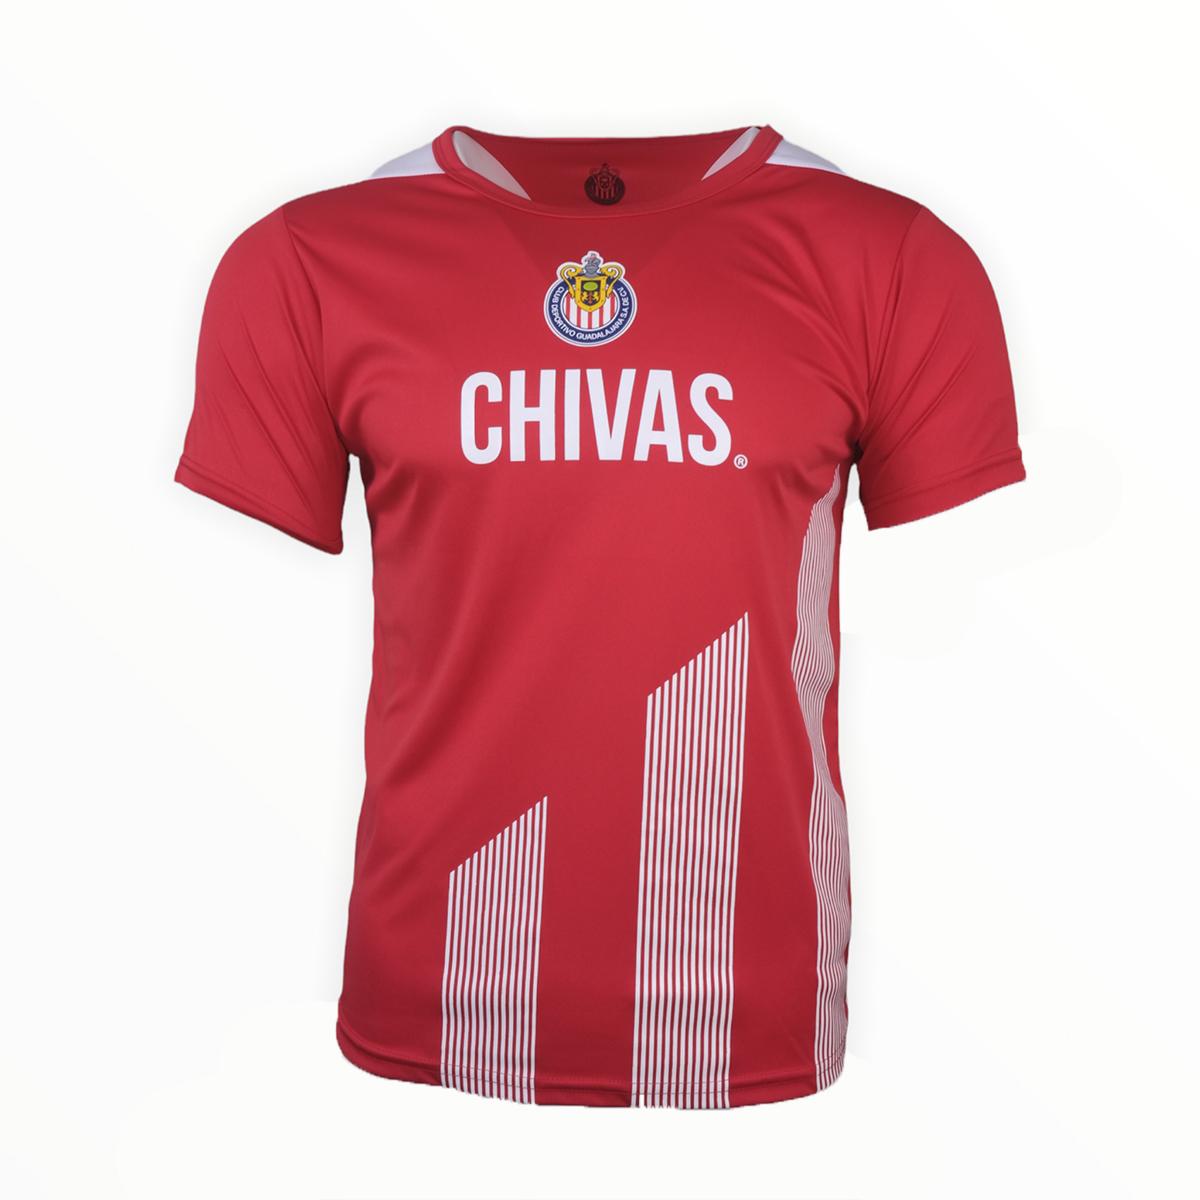 Playera de Hombre Chivas Deportiva Original